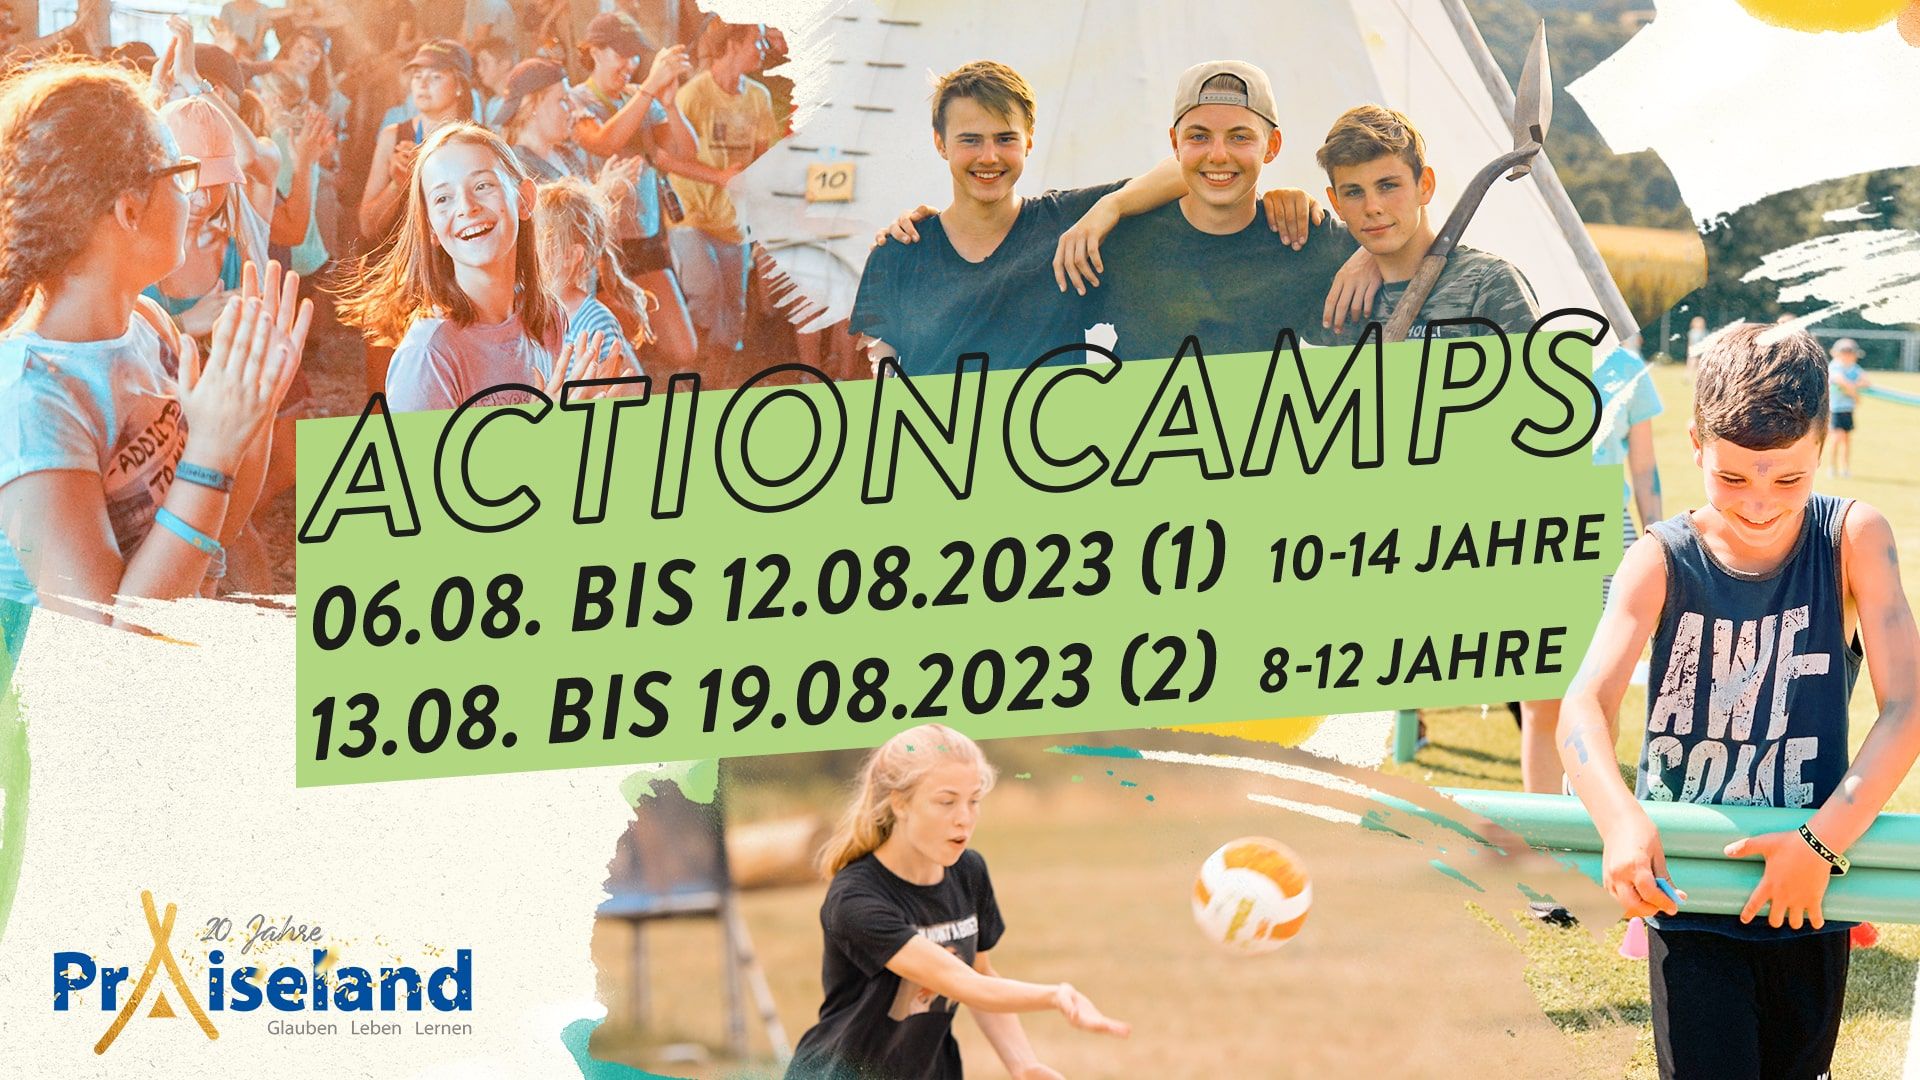 Praiseland Actioncamps 2023